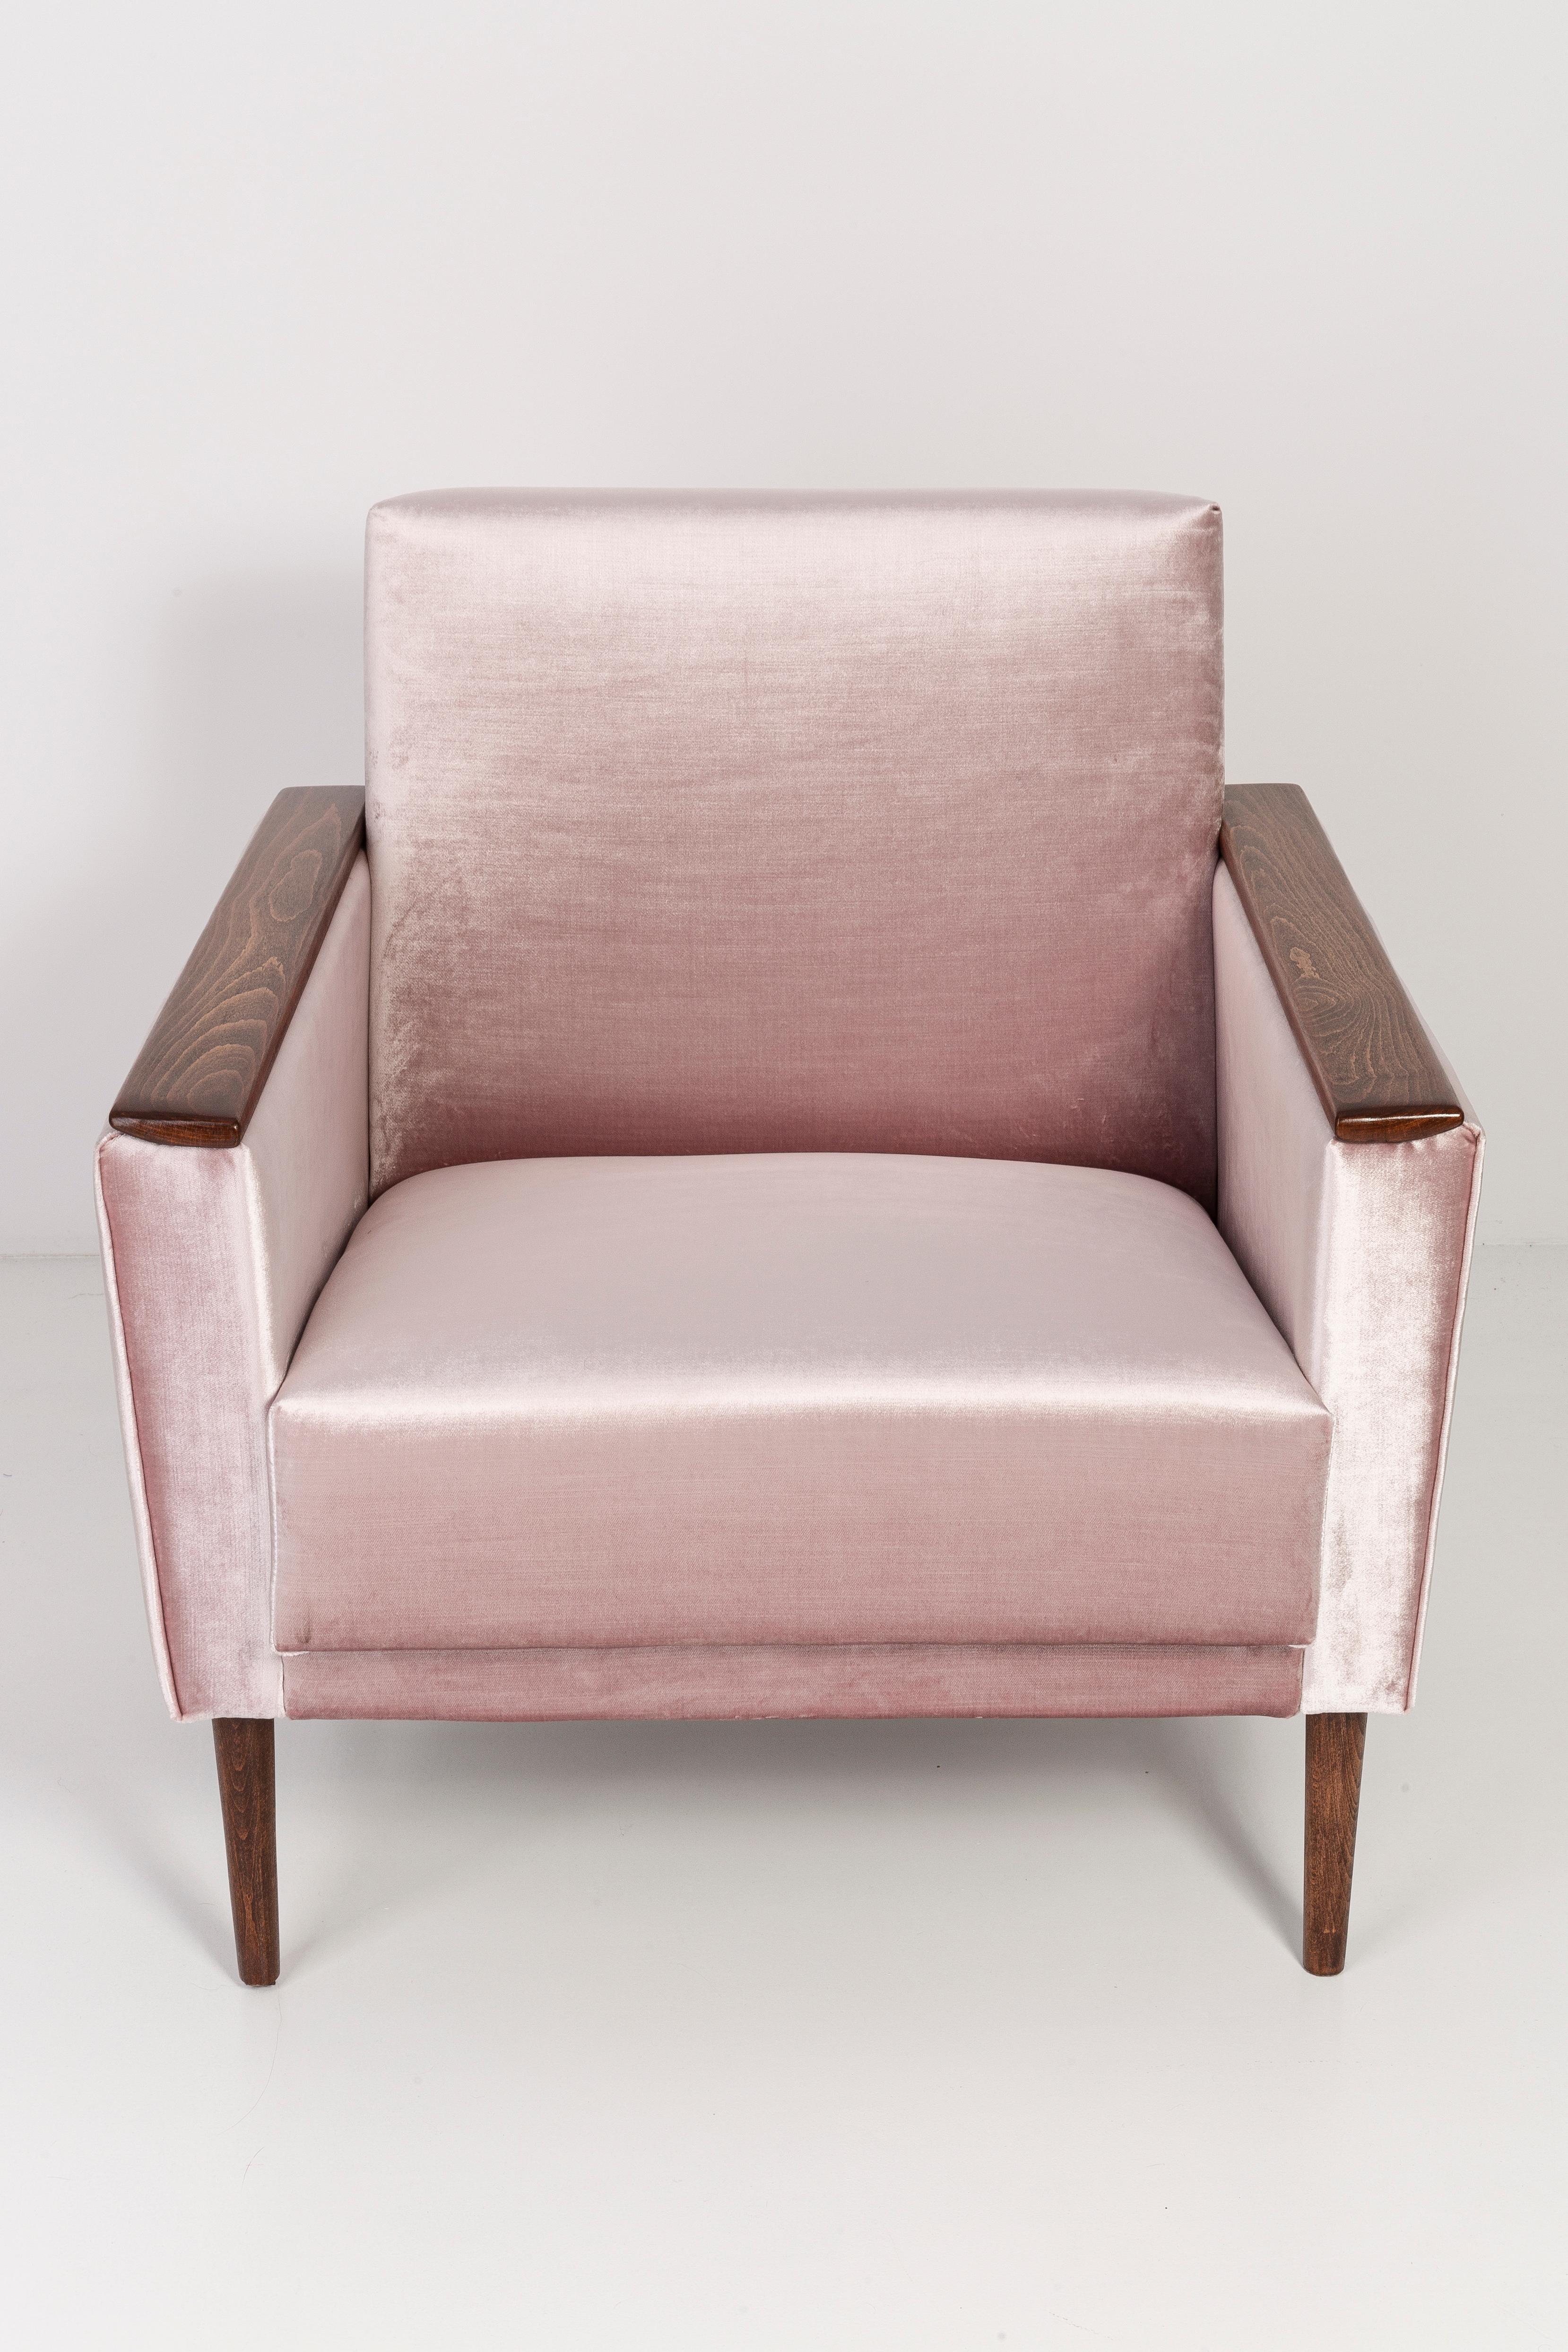 Fauteuil allemand produit dans les années 1960 à Berlin. Le fauteuil est après une rénovation complète de la tapisserie et de la menuiserie. Le cadre en bois est soigneusement nettoyé et recouvert d'un vernis semi-mat de la couleur d'une noix. Le